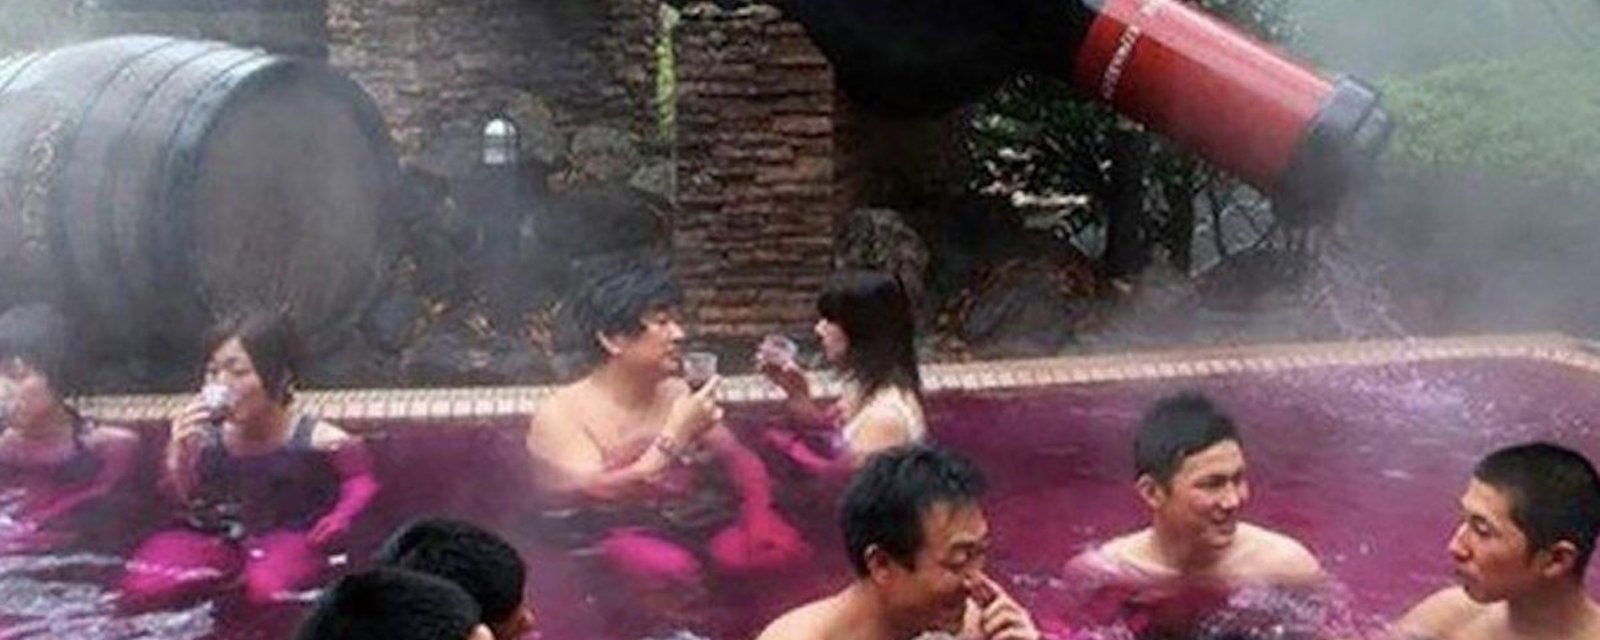 Au Japon, un spa propose à ses clients de se baigner dans… du vin!